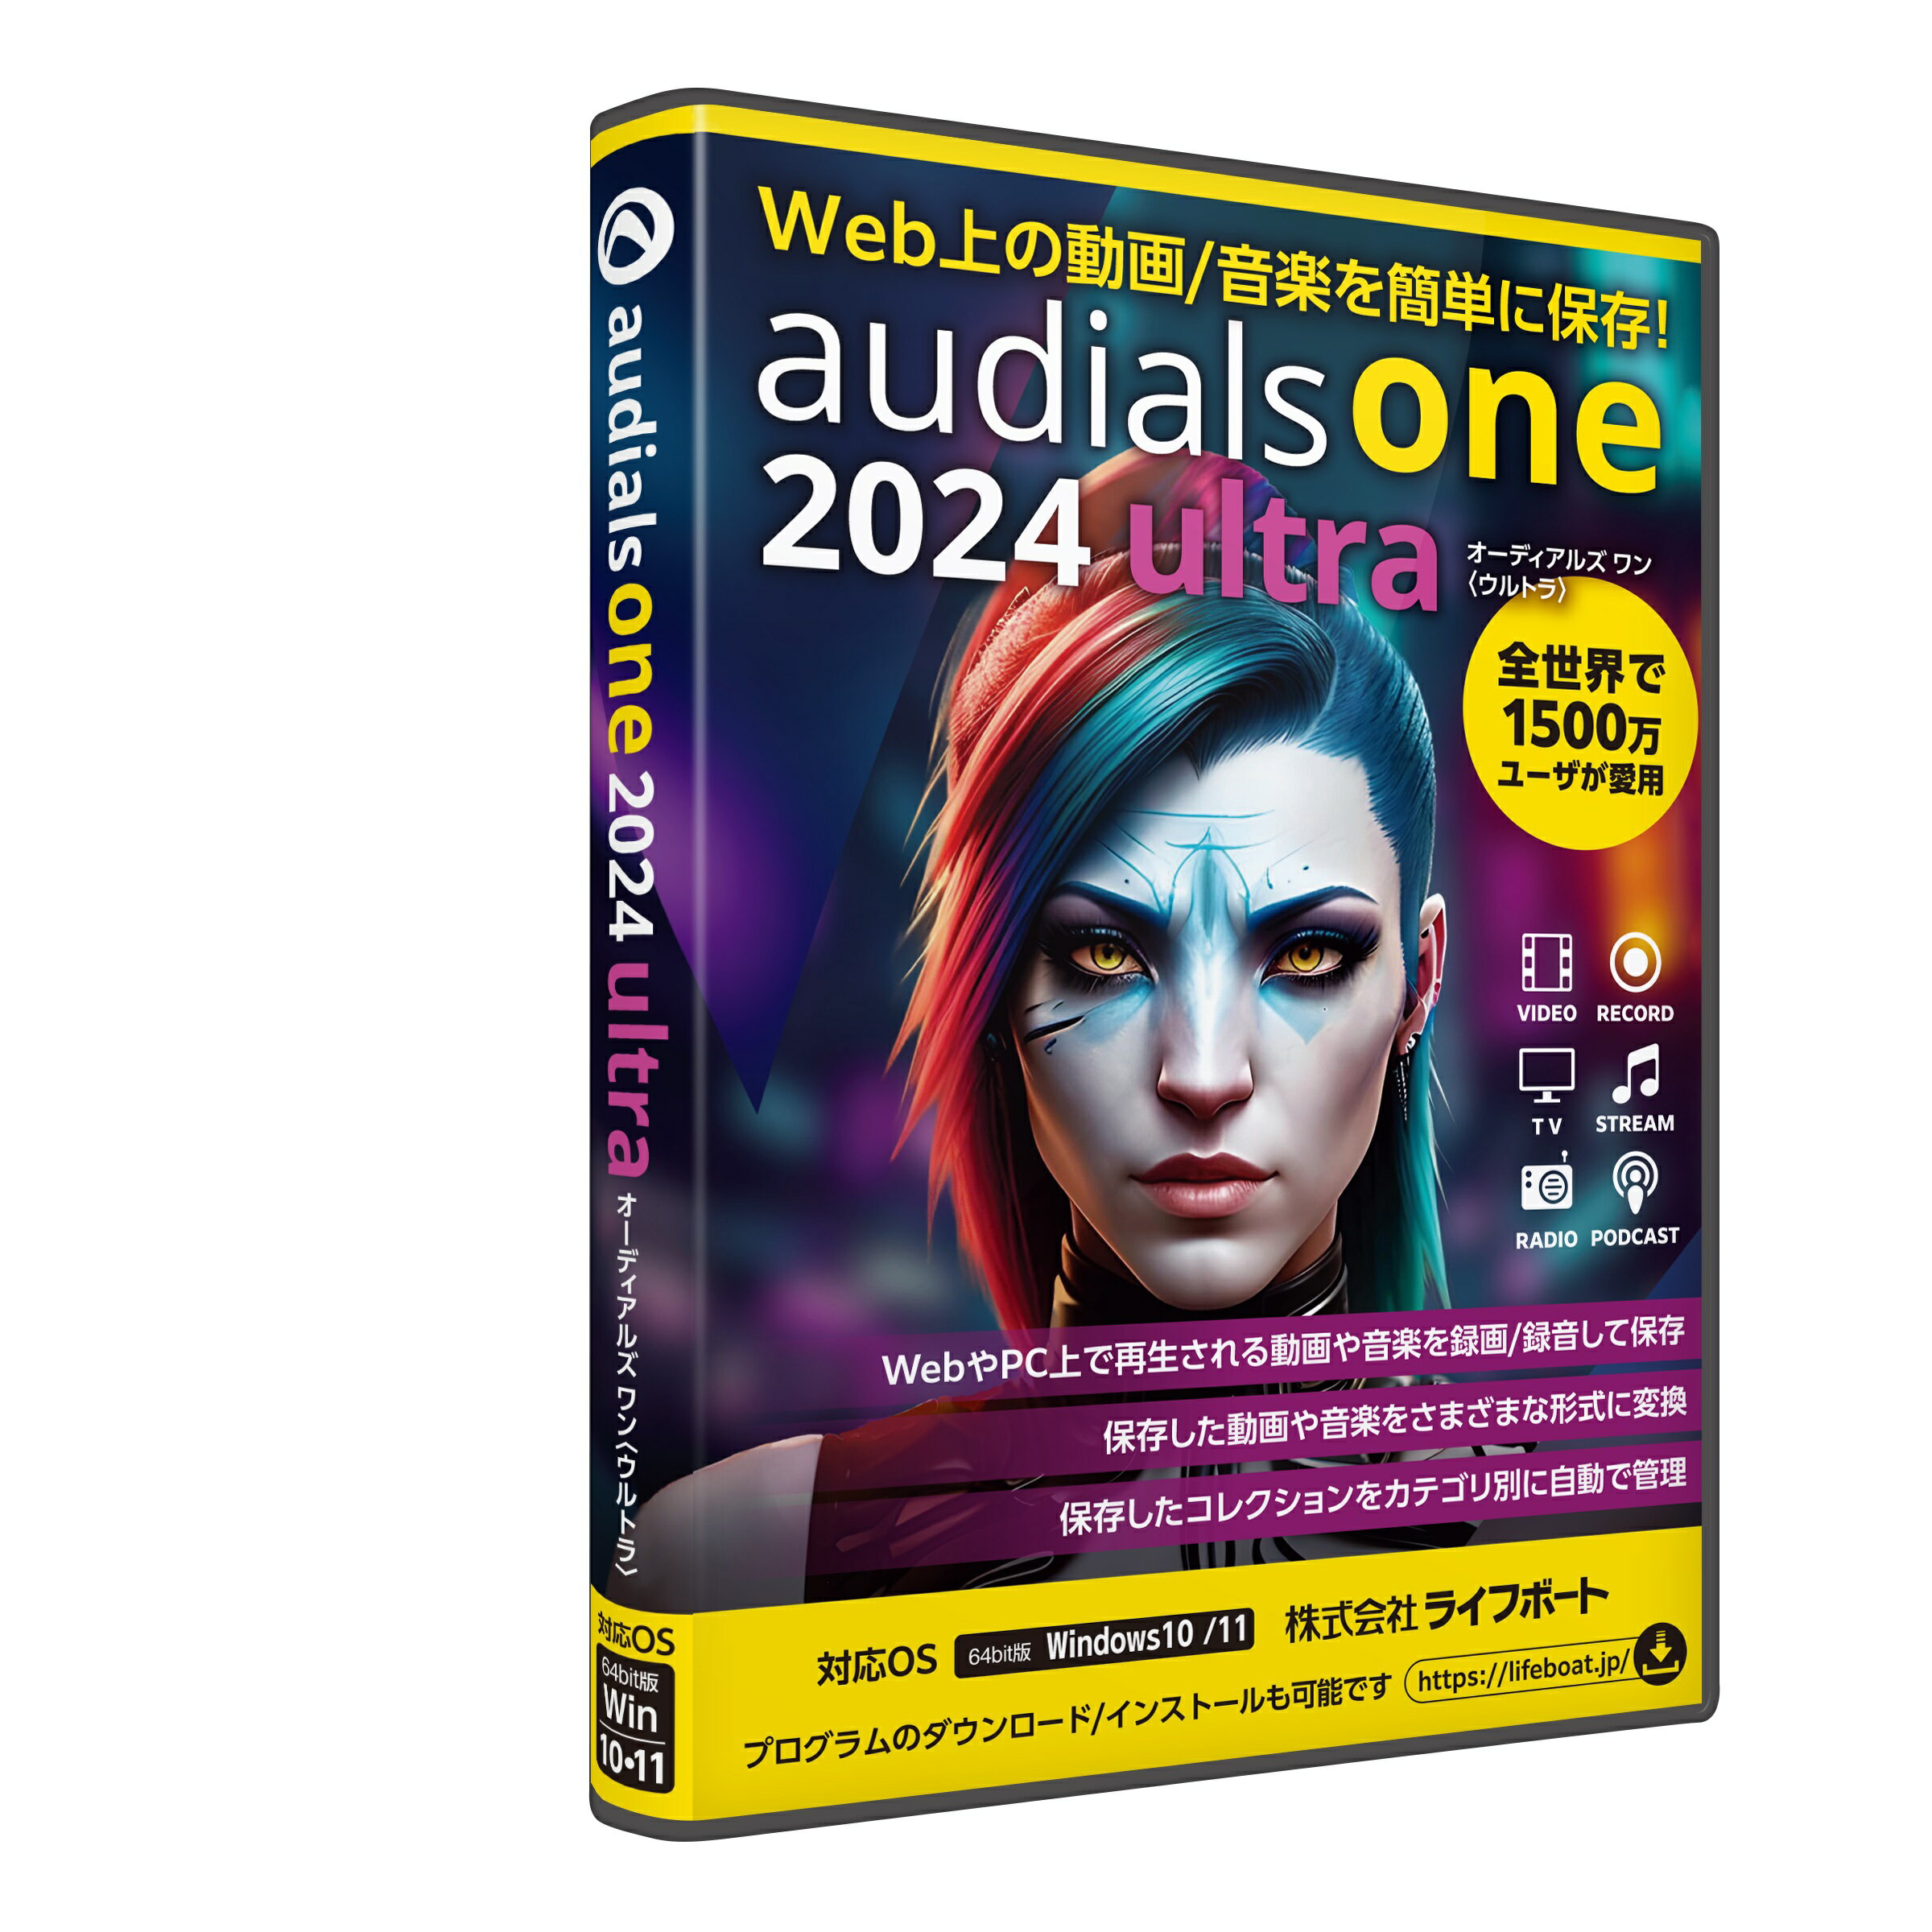 【新品/取寄品/代引不可】Audials One 2024 Ultra 99350000